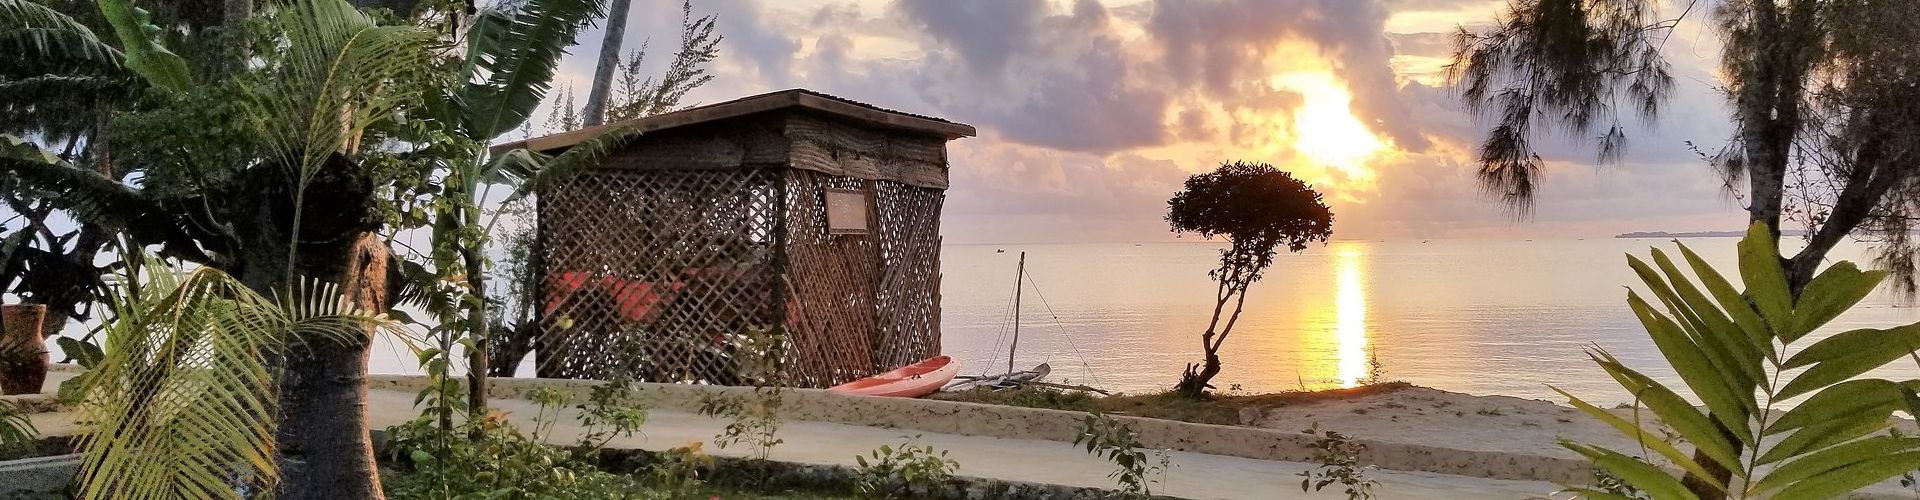 Godetevi qualche giorno di tranquillità nel magico arcipelago di Zanzibar